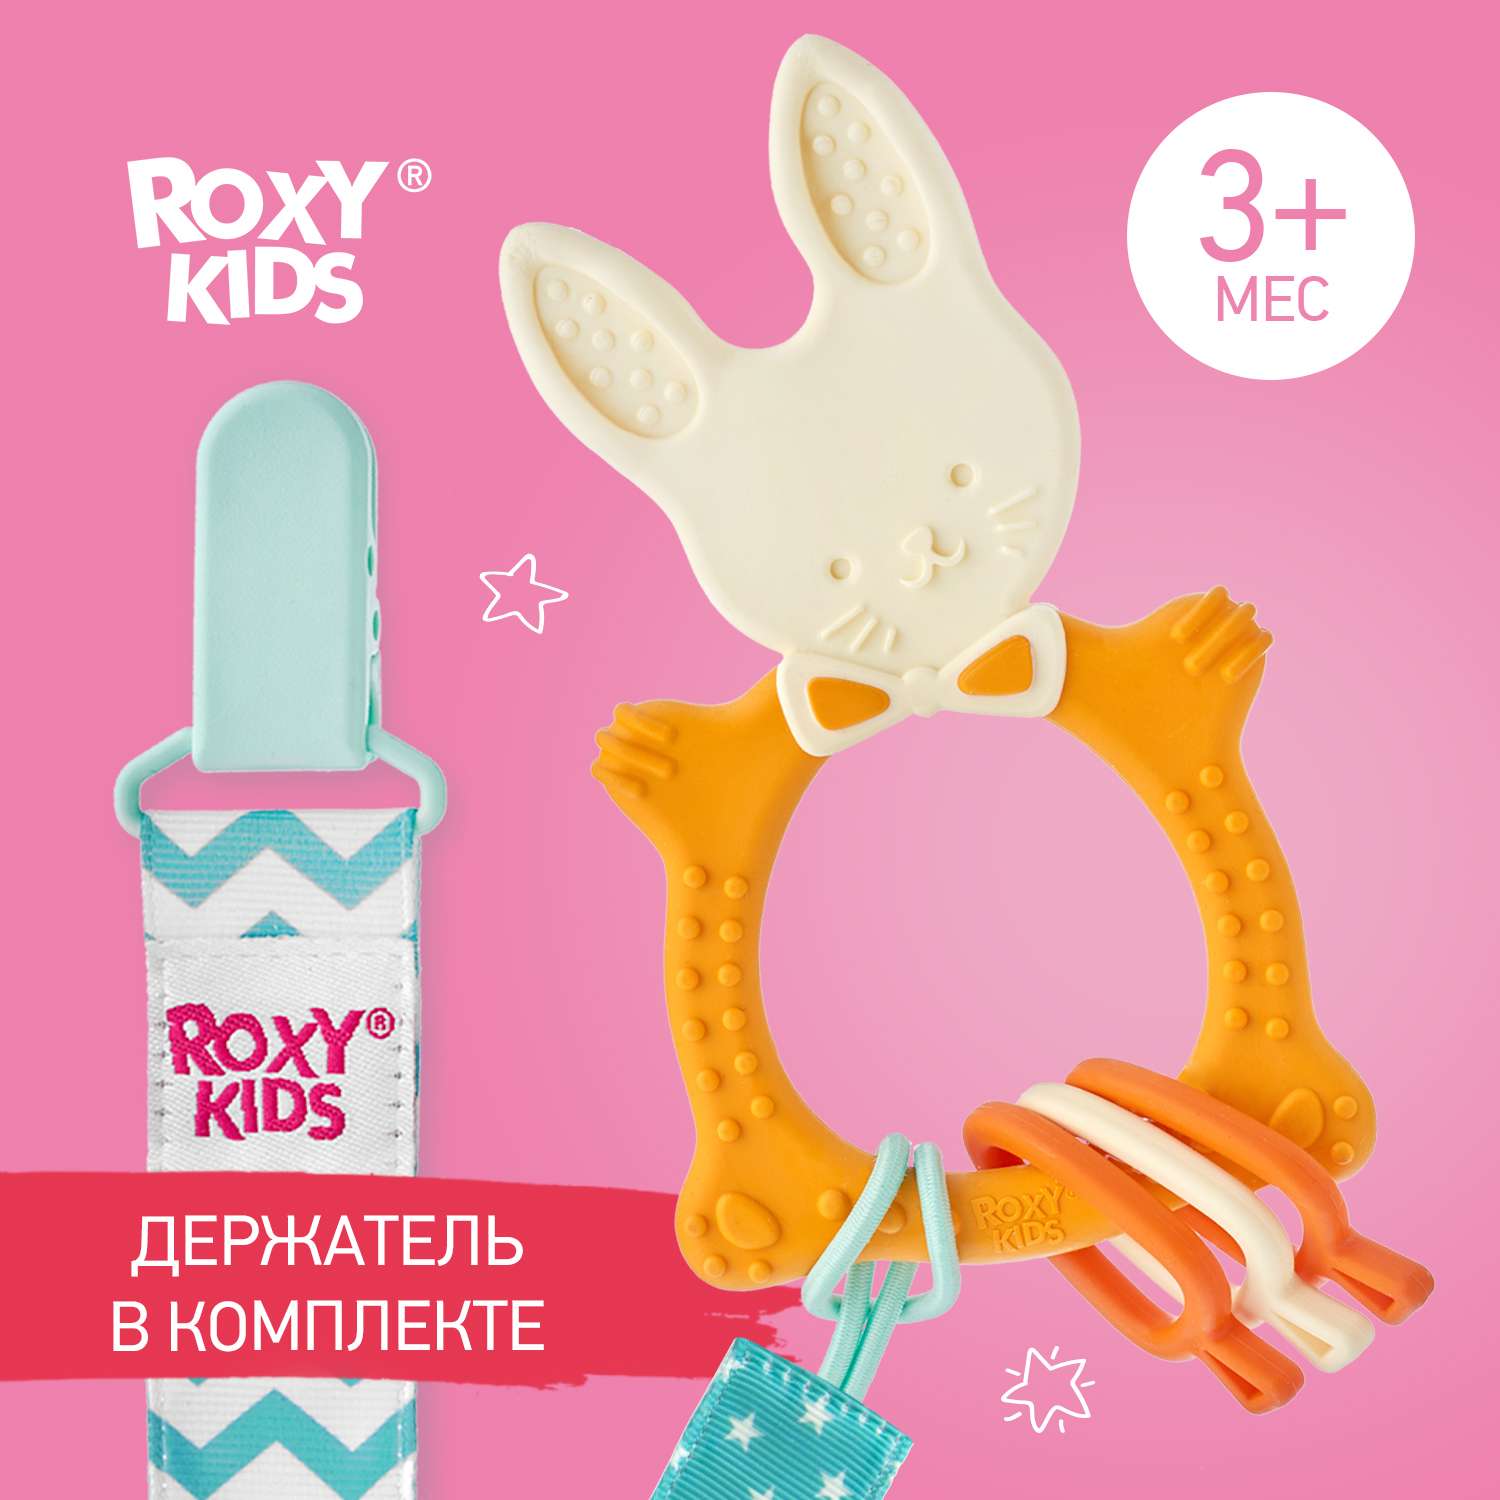 Прорезыватель ROXY-KIDS Bunny teether универсальный на держателе цвет горчичный - фото 1